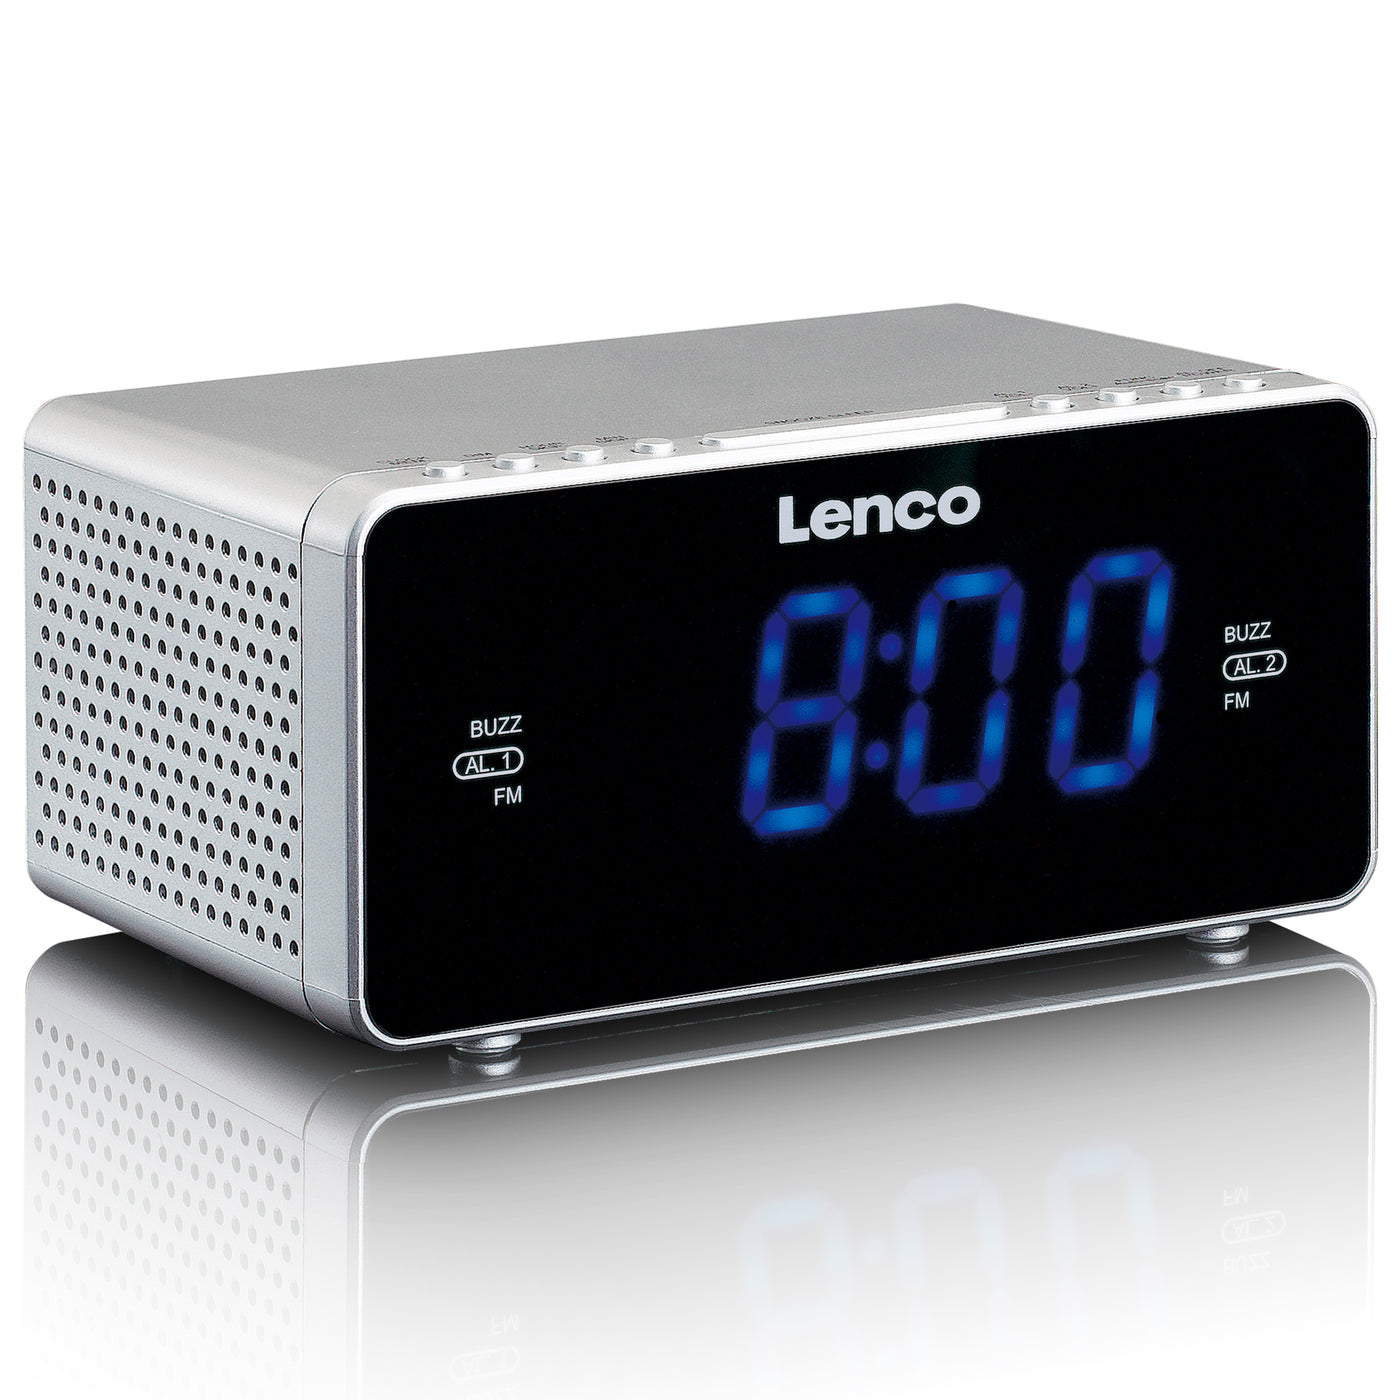 LENCO CR-520SI - Radiobudzik stereofoniczny FM z portem USB - Srebrny